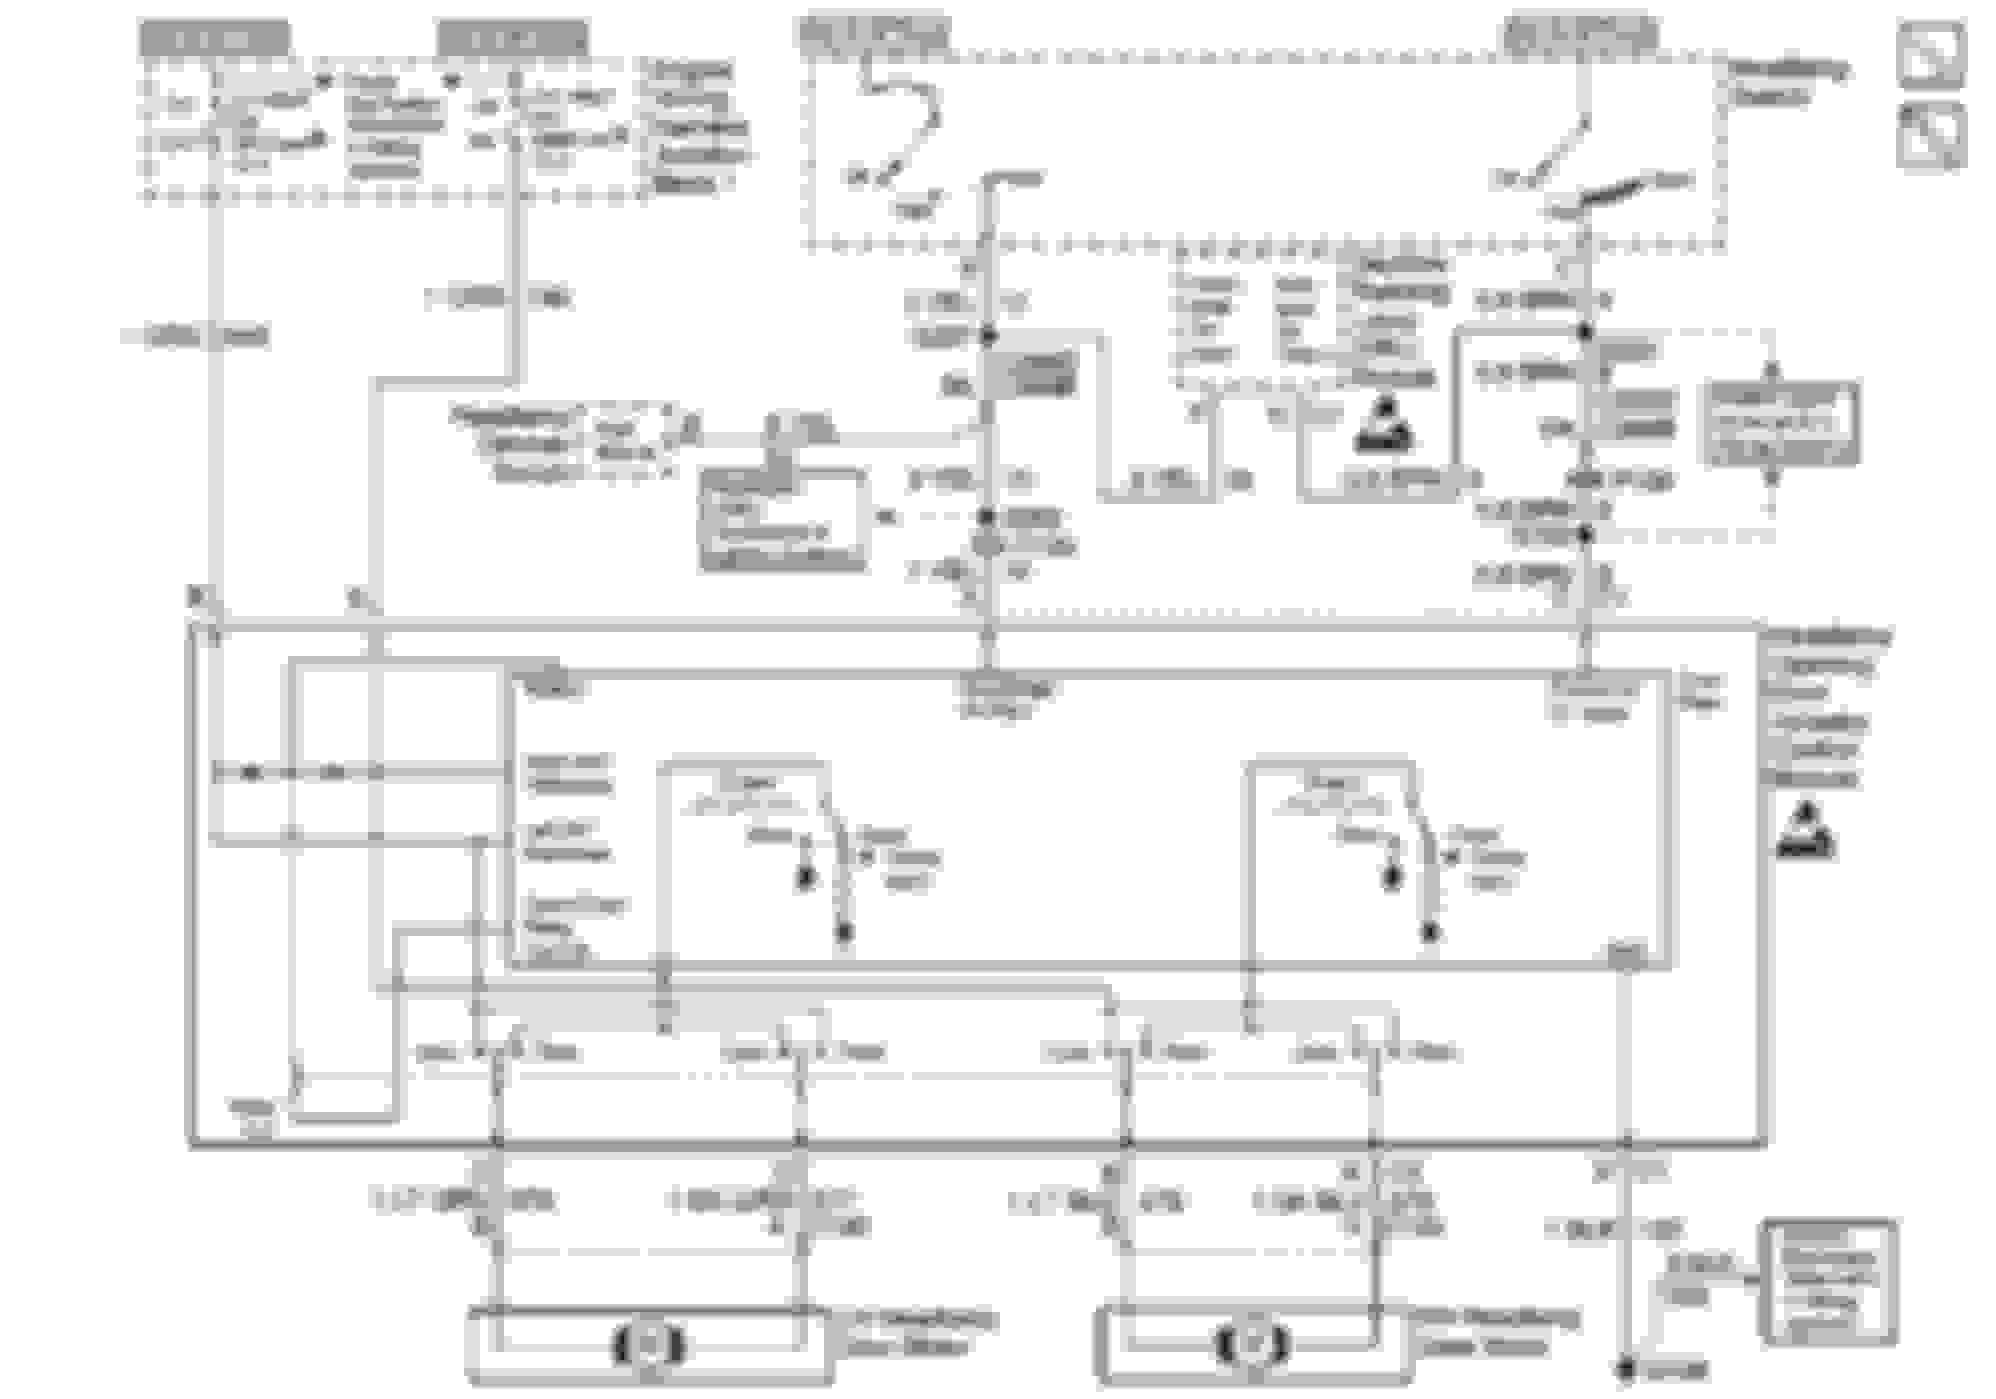 Wiring Diagram 2000 Pontiac Firebird - Complete Wiring Schemas